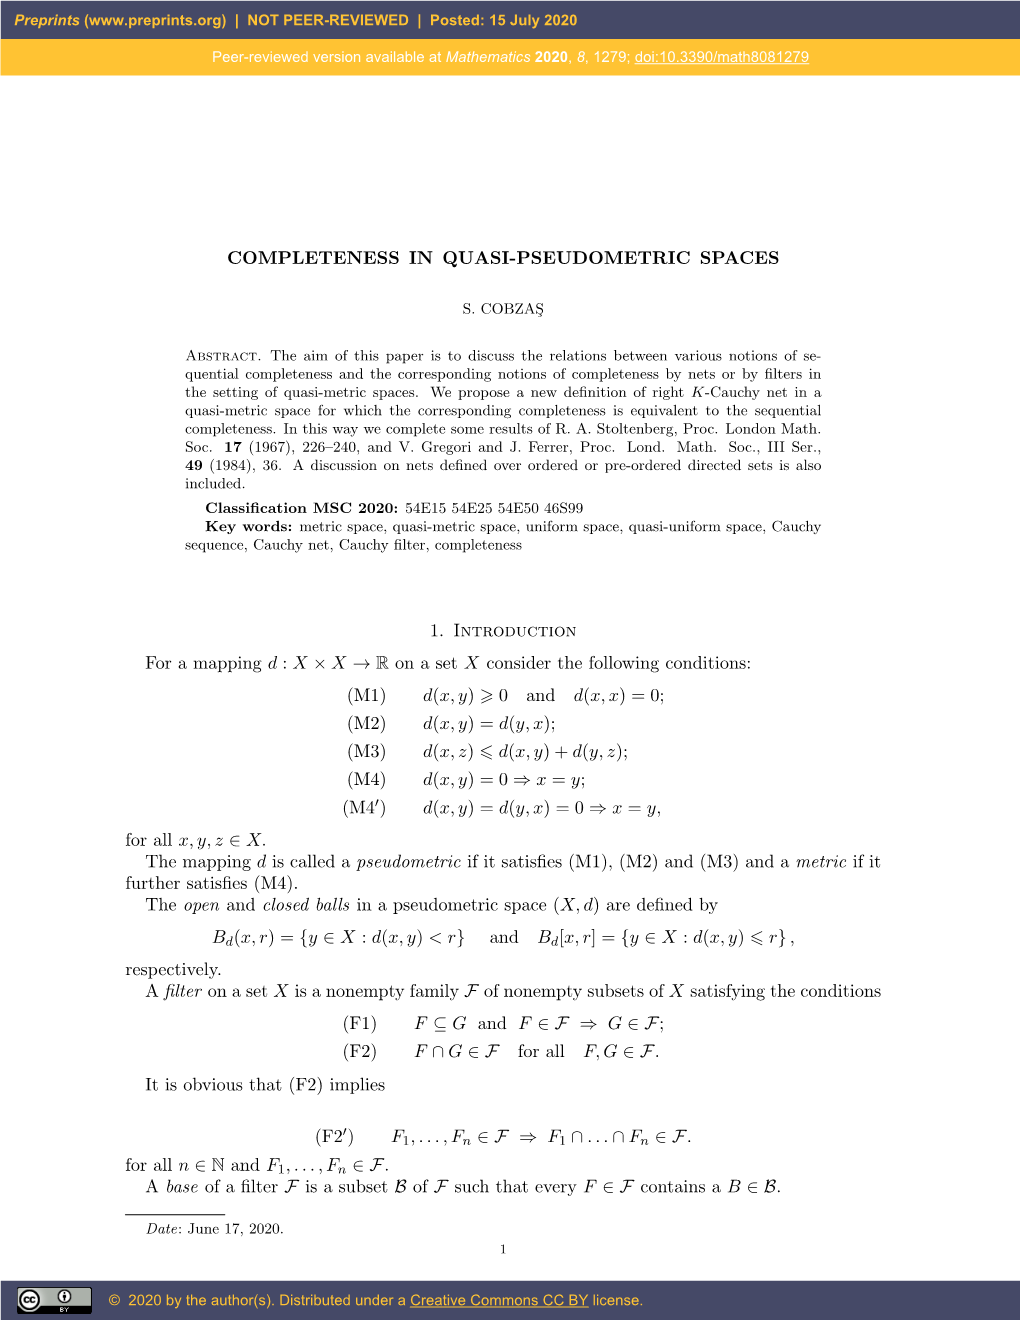 Completeness in Quasi-Pseudometric Spaces